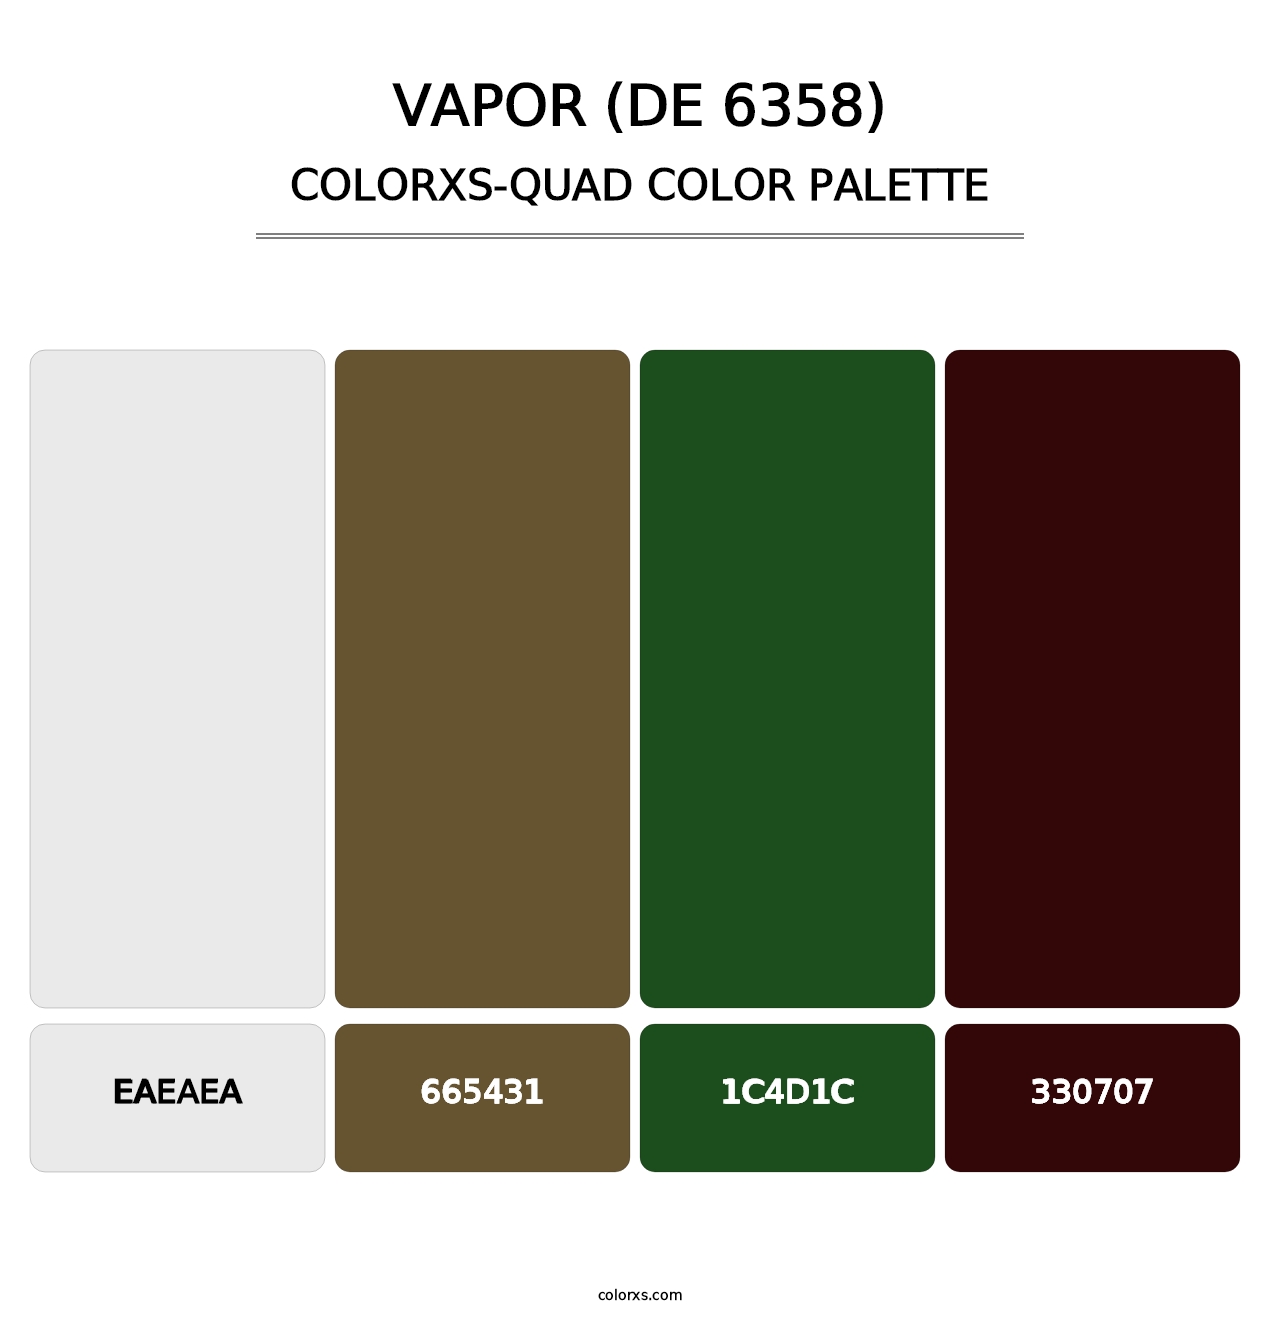 Vapor (DE 6358) - Colorxs Quad Palette